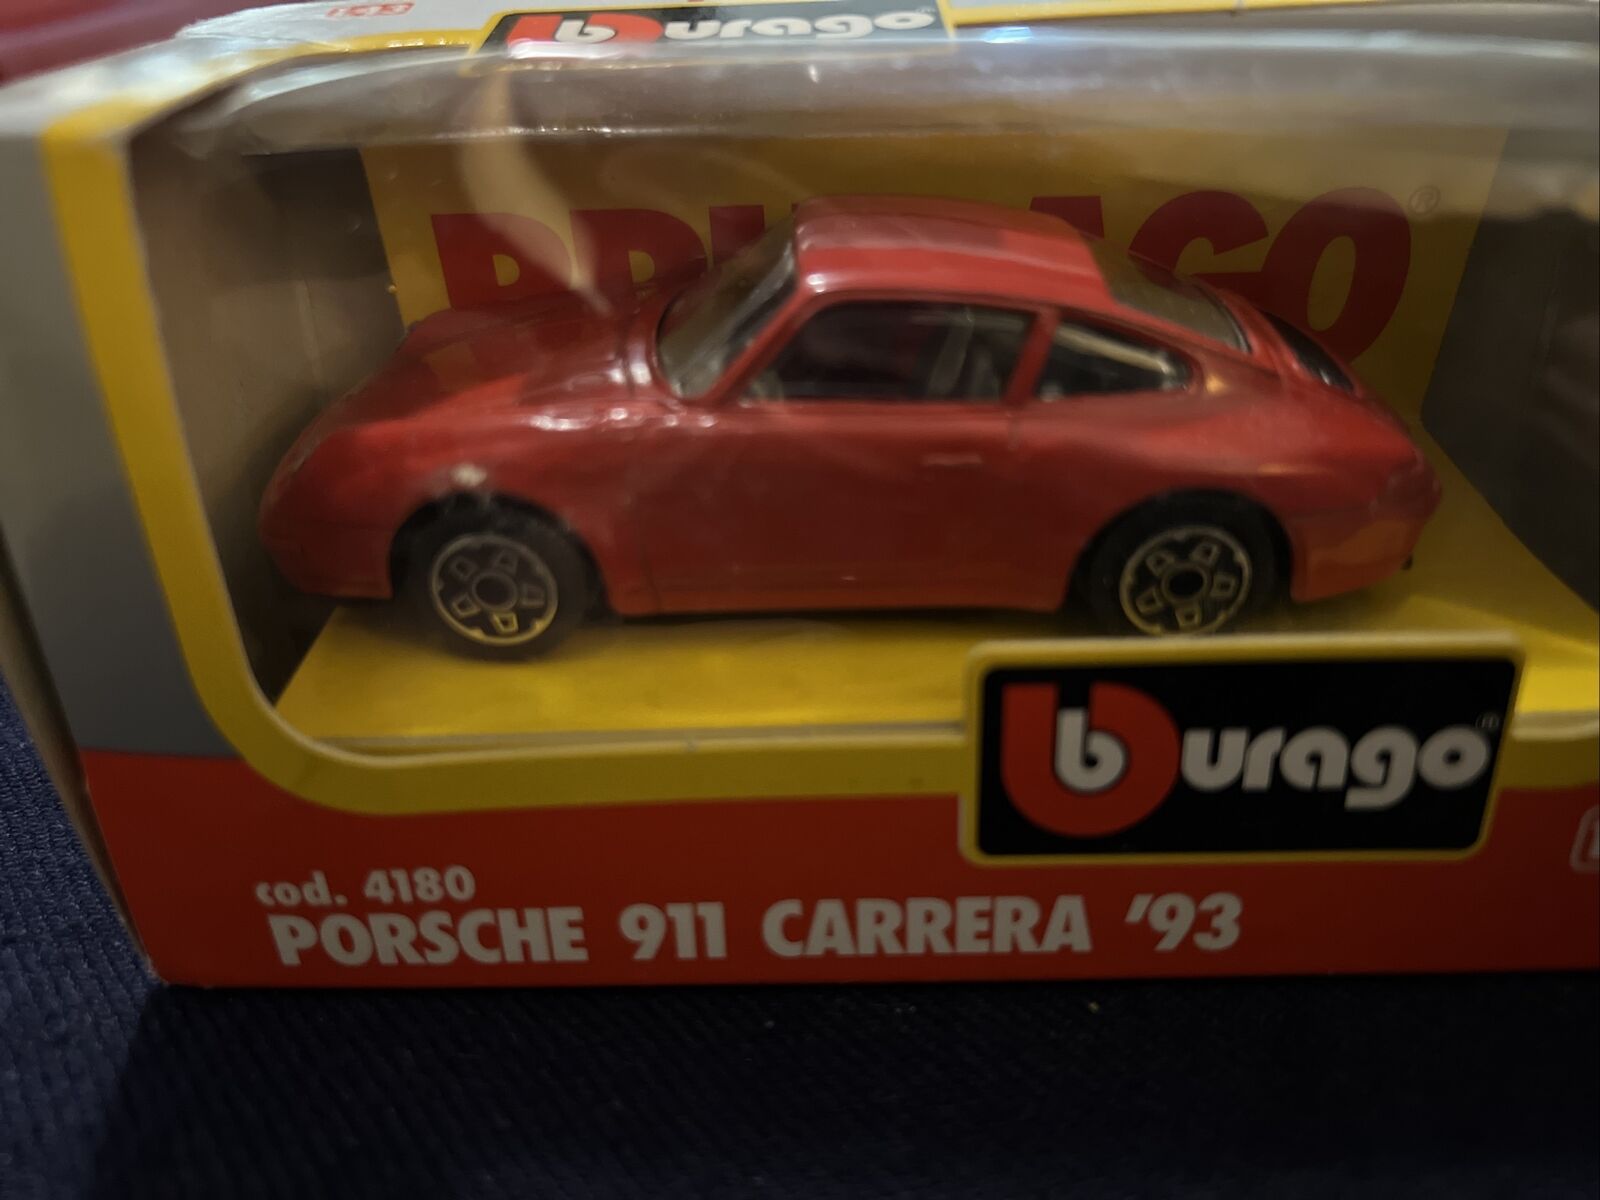 BURAGO 1/43 CLASSIC RED PORSCHE 911 CARRERA 93 DIECAST CAR COD. 4180 | eBay